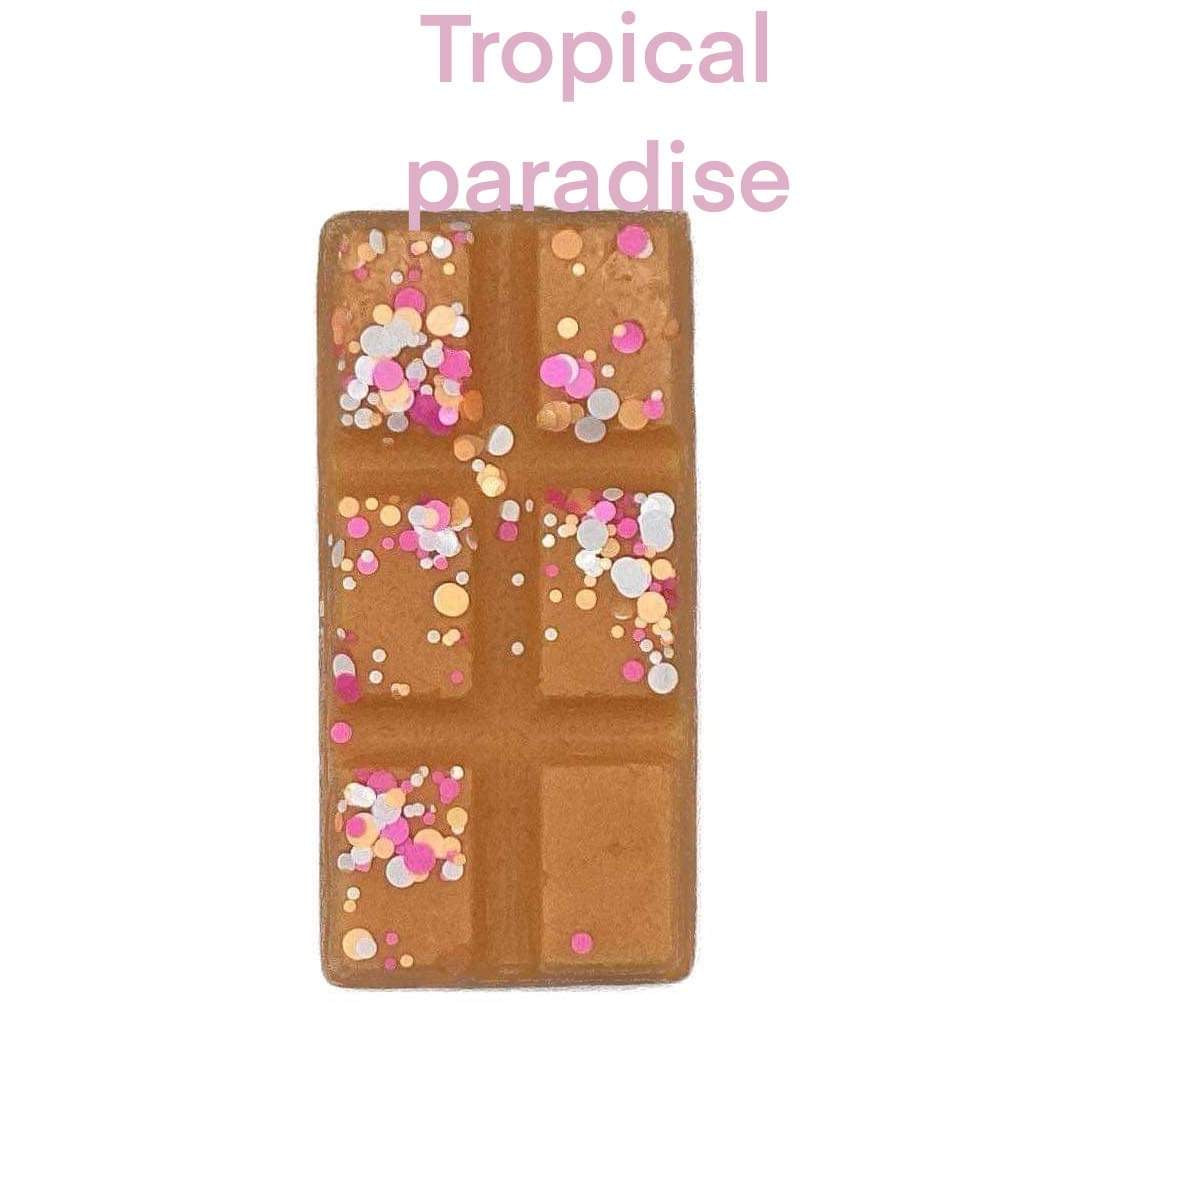 Mini snap bar tropical paradise